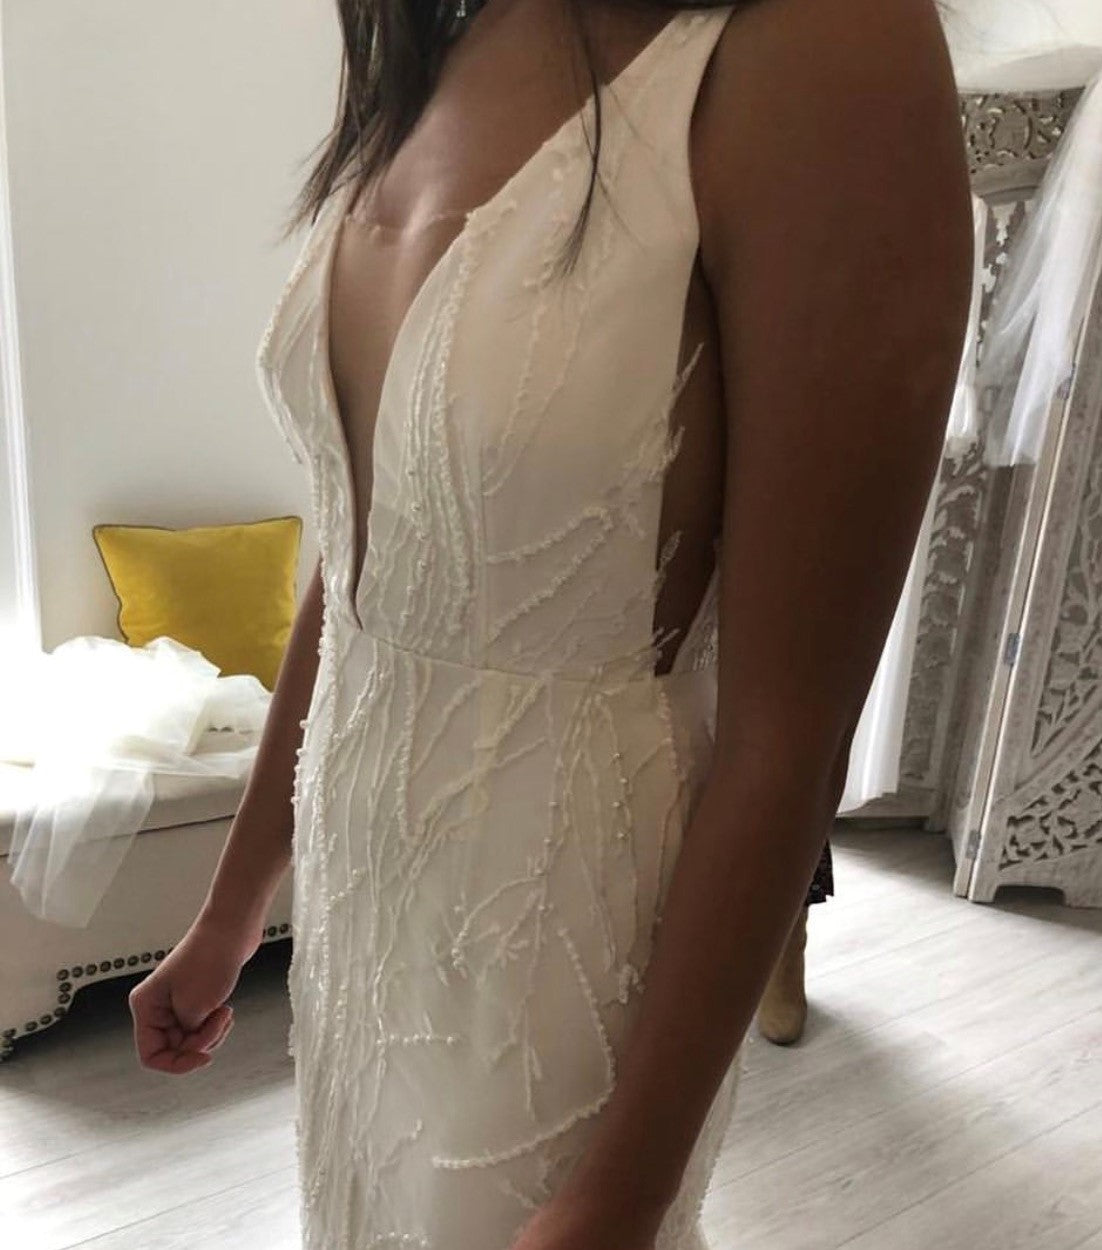 Bespoke wedding dress using Juliana lace 